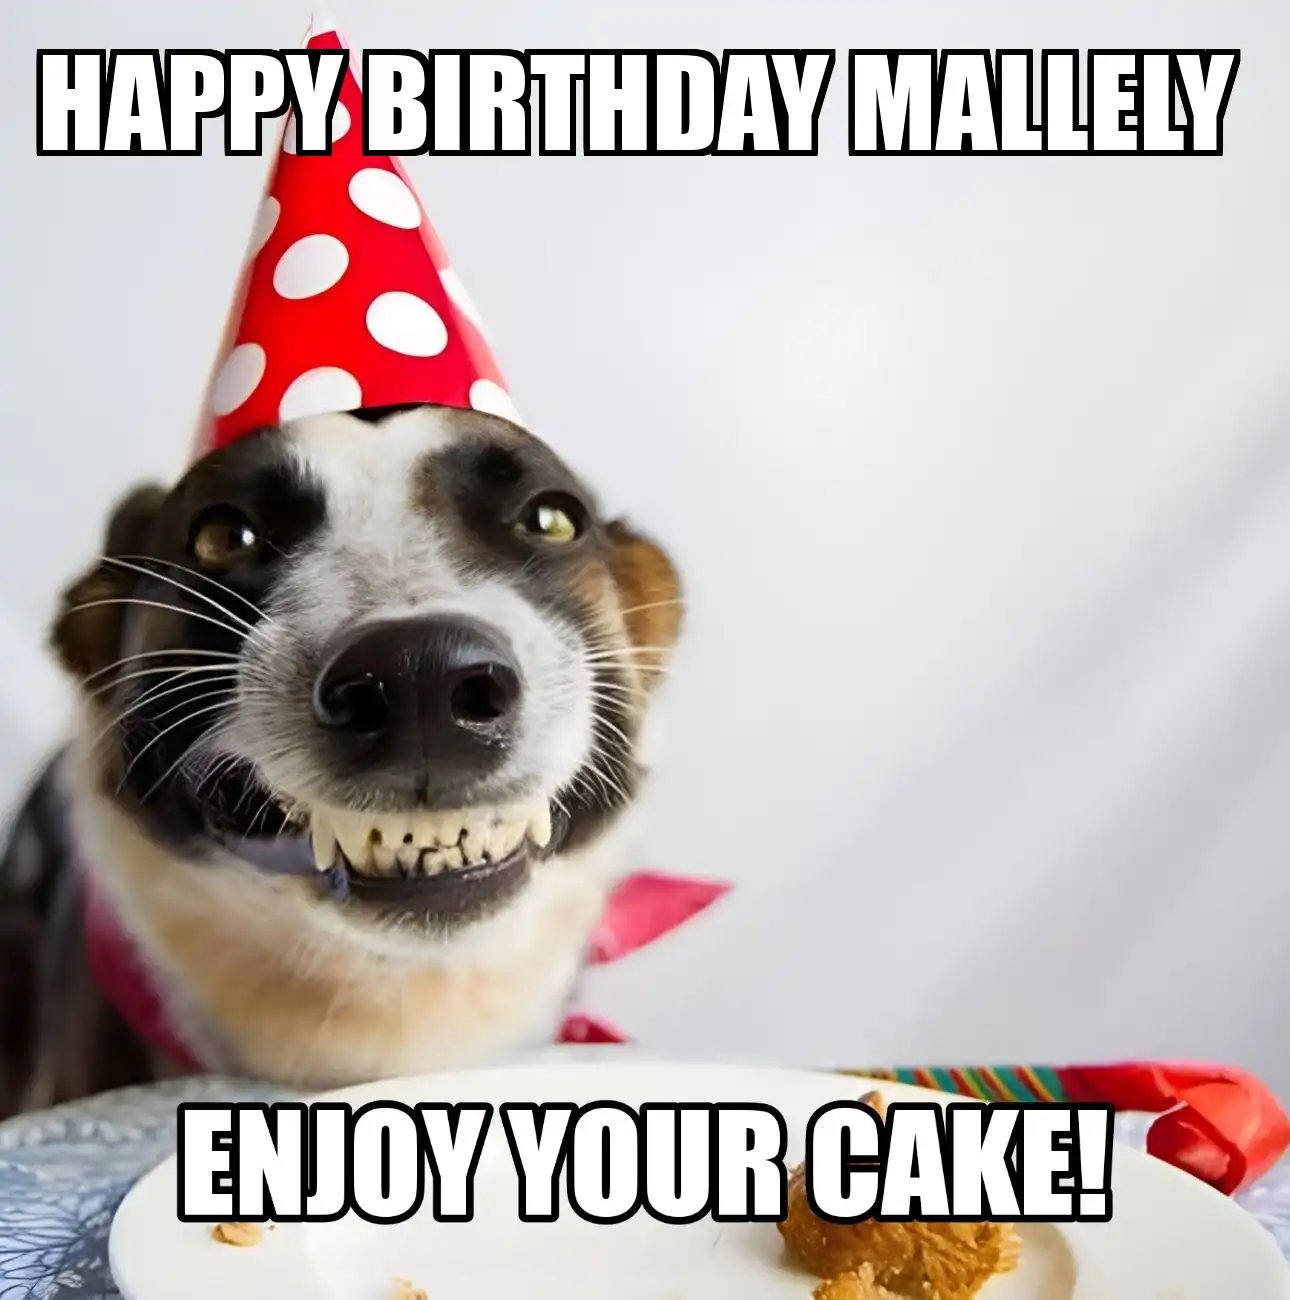 Happy Birthday Mallely Enjoy Your Cake Dog Meme